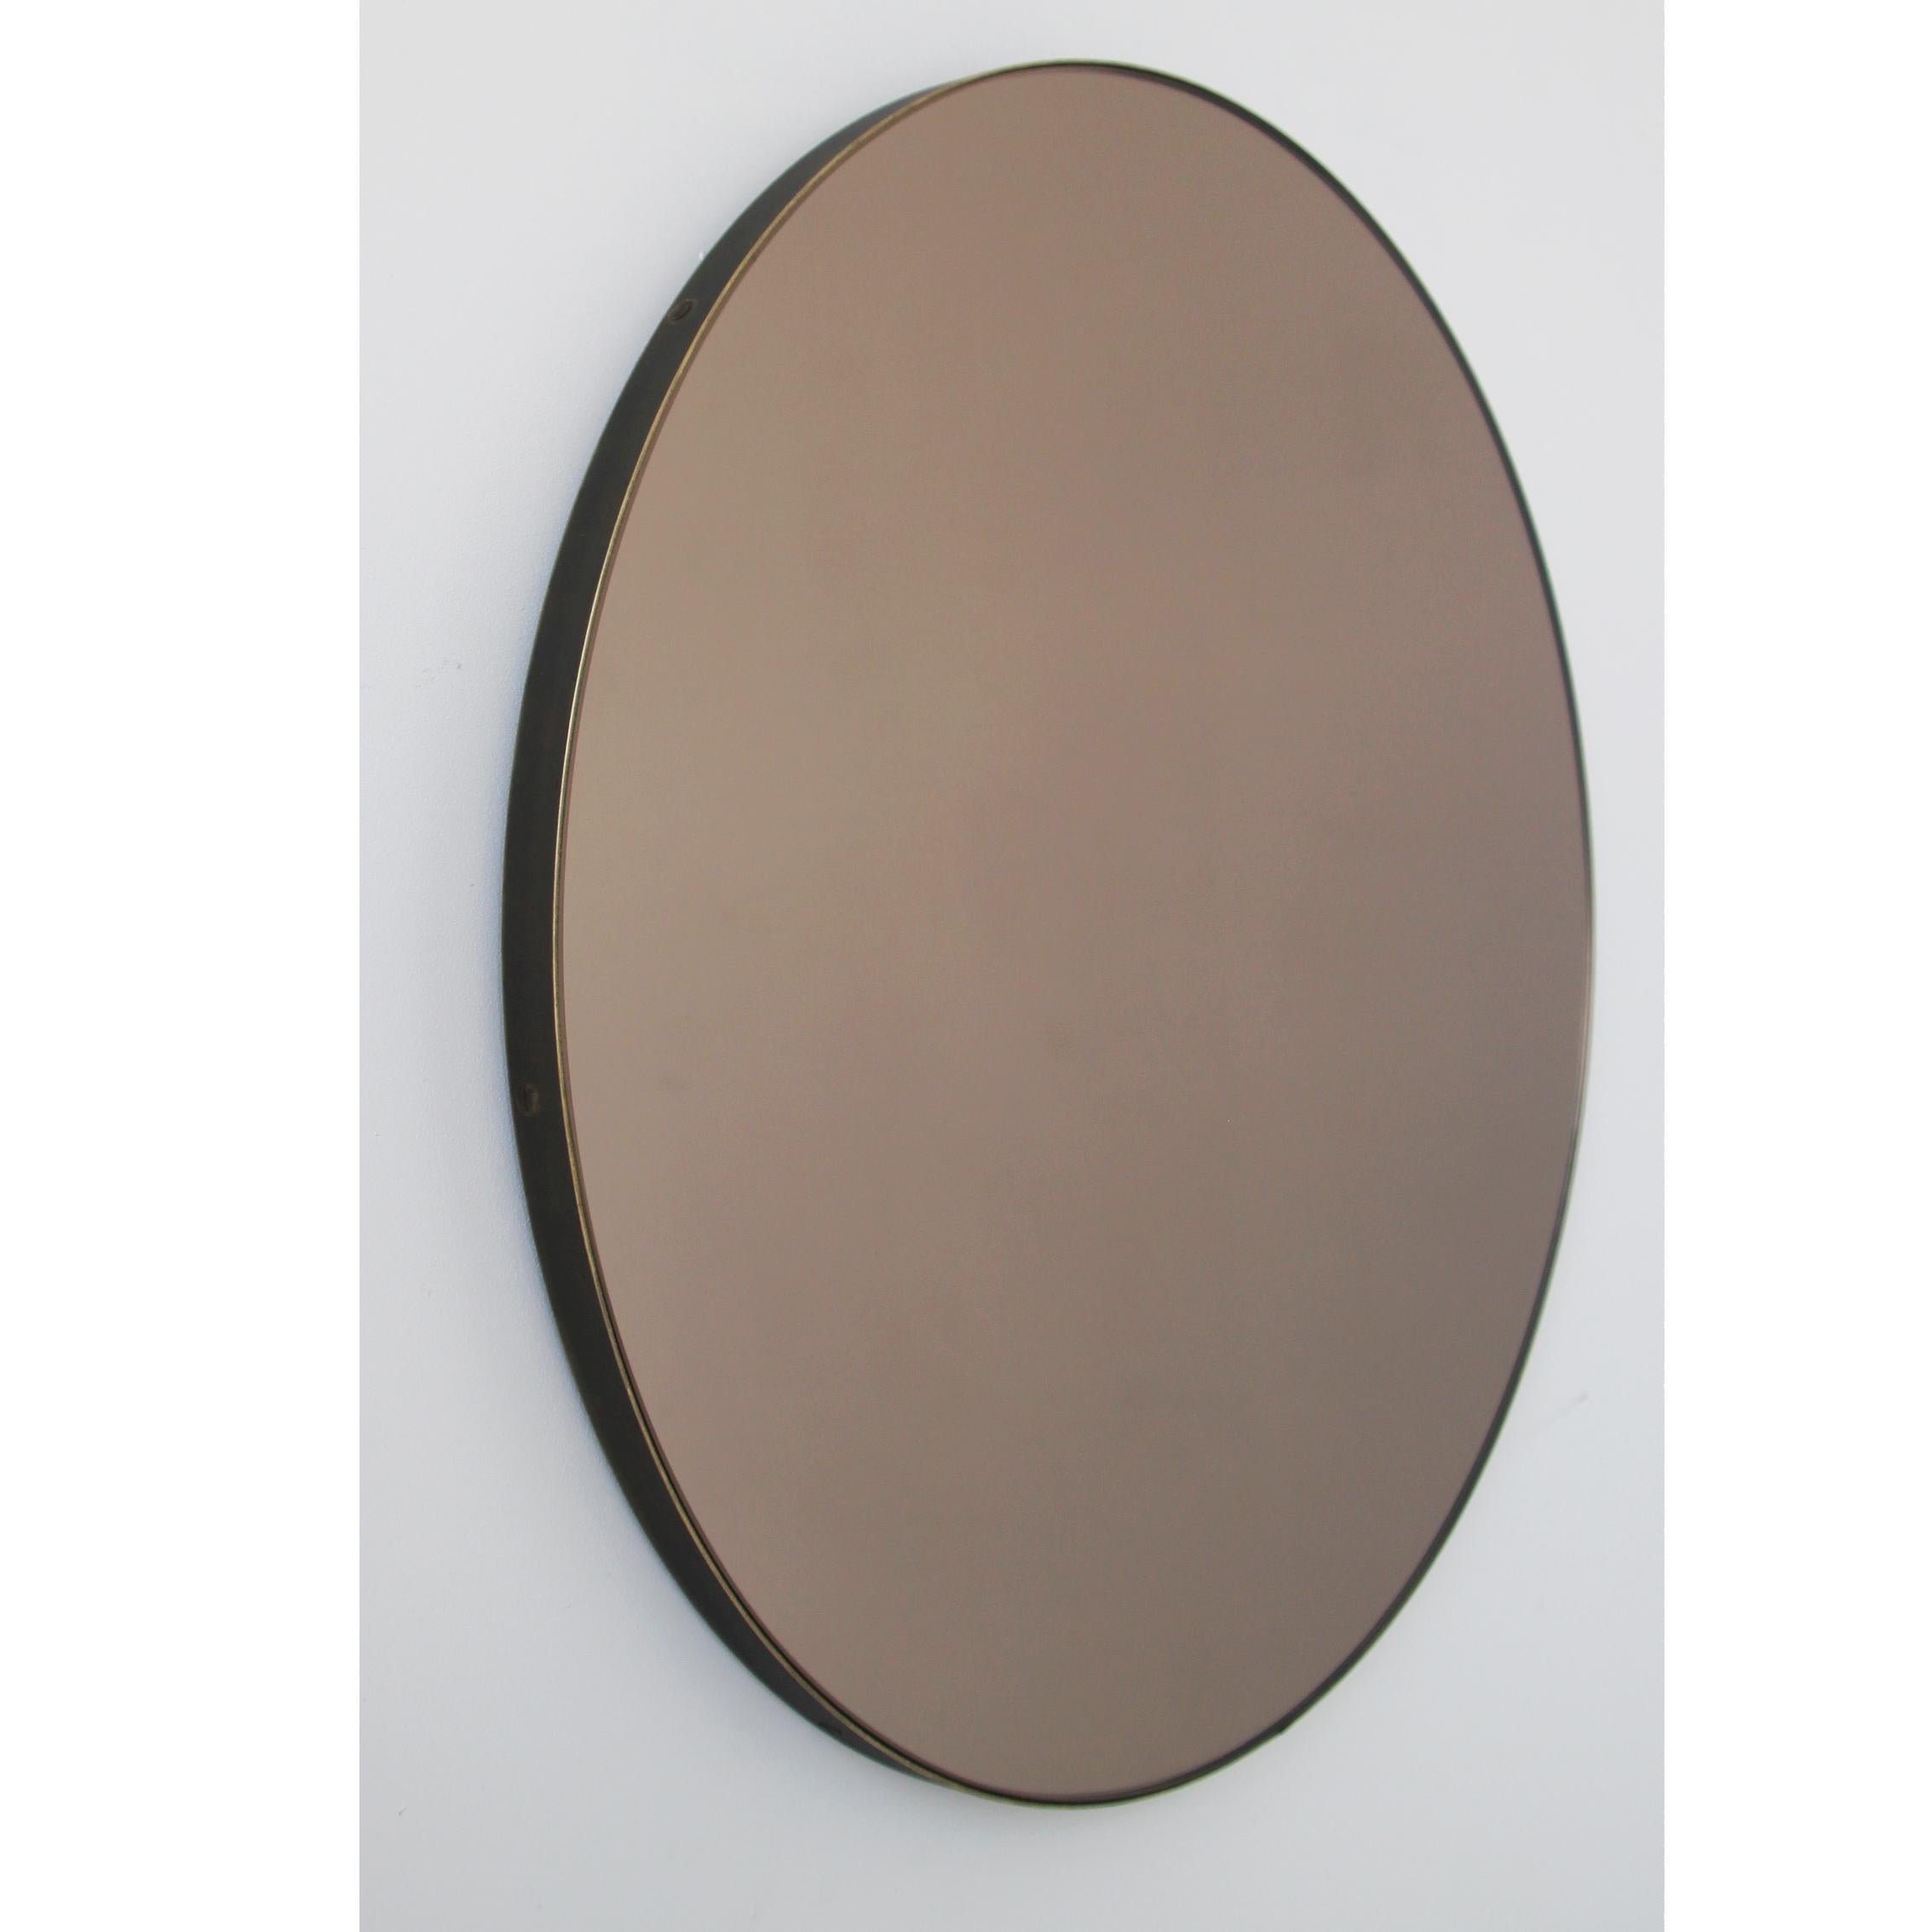 Miroir rond Orbis™ contemporain teinté bronze avec un cadre en laiton massif à la finition patinée bronze. Conçu et fabriqué à la main à Londres, au Royaume-Uni.

Les miroirs de taille moyenne, grande et extra-large (60, 80 et 100 cm) sont équipés